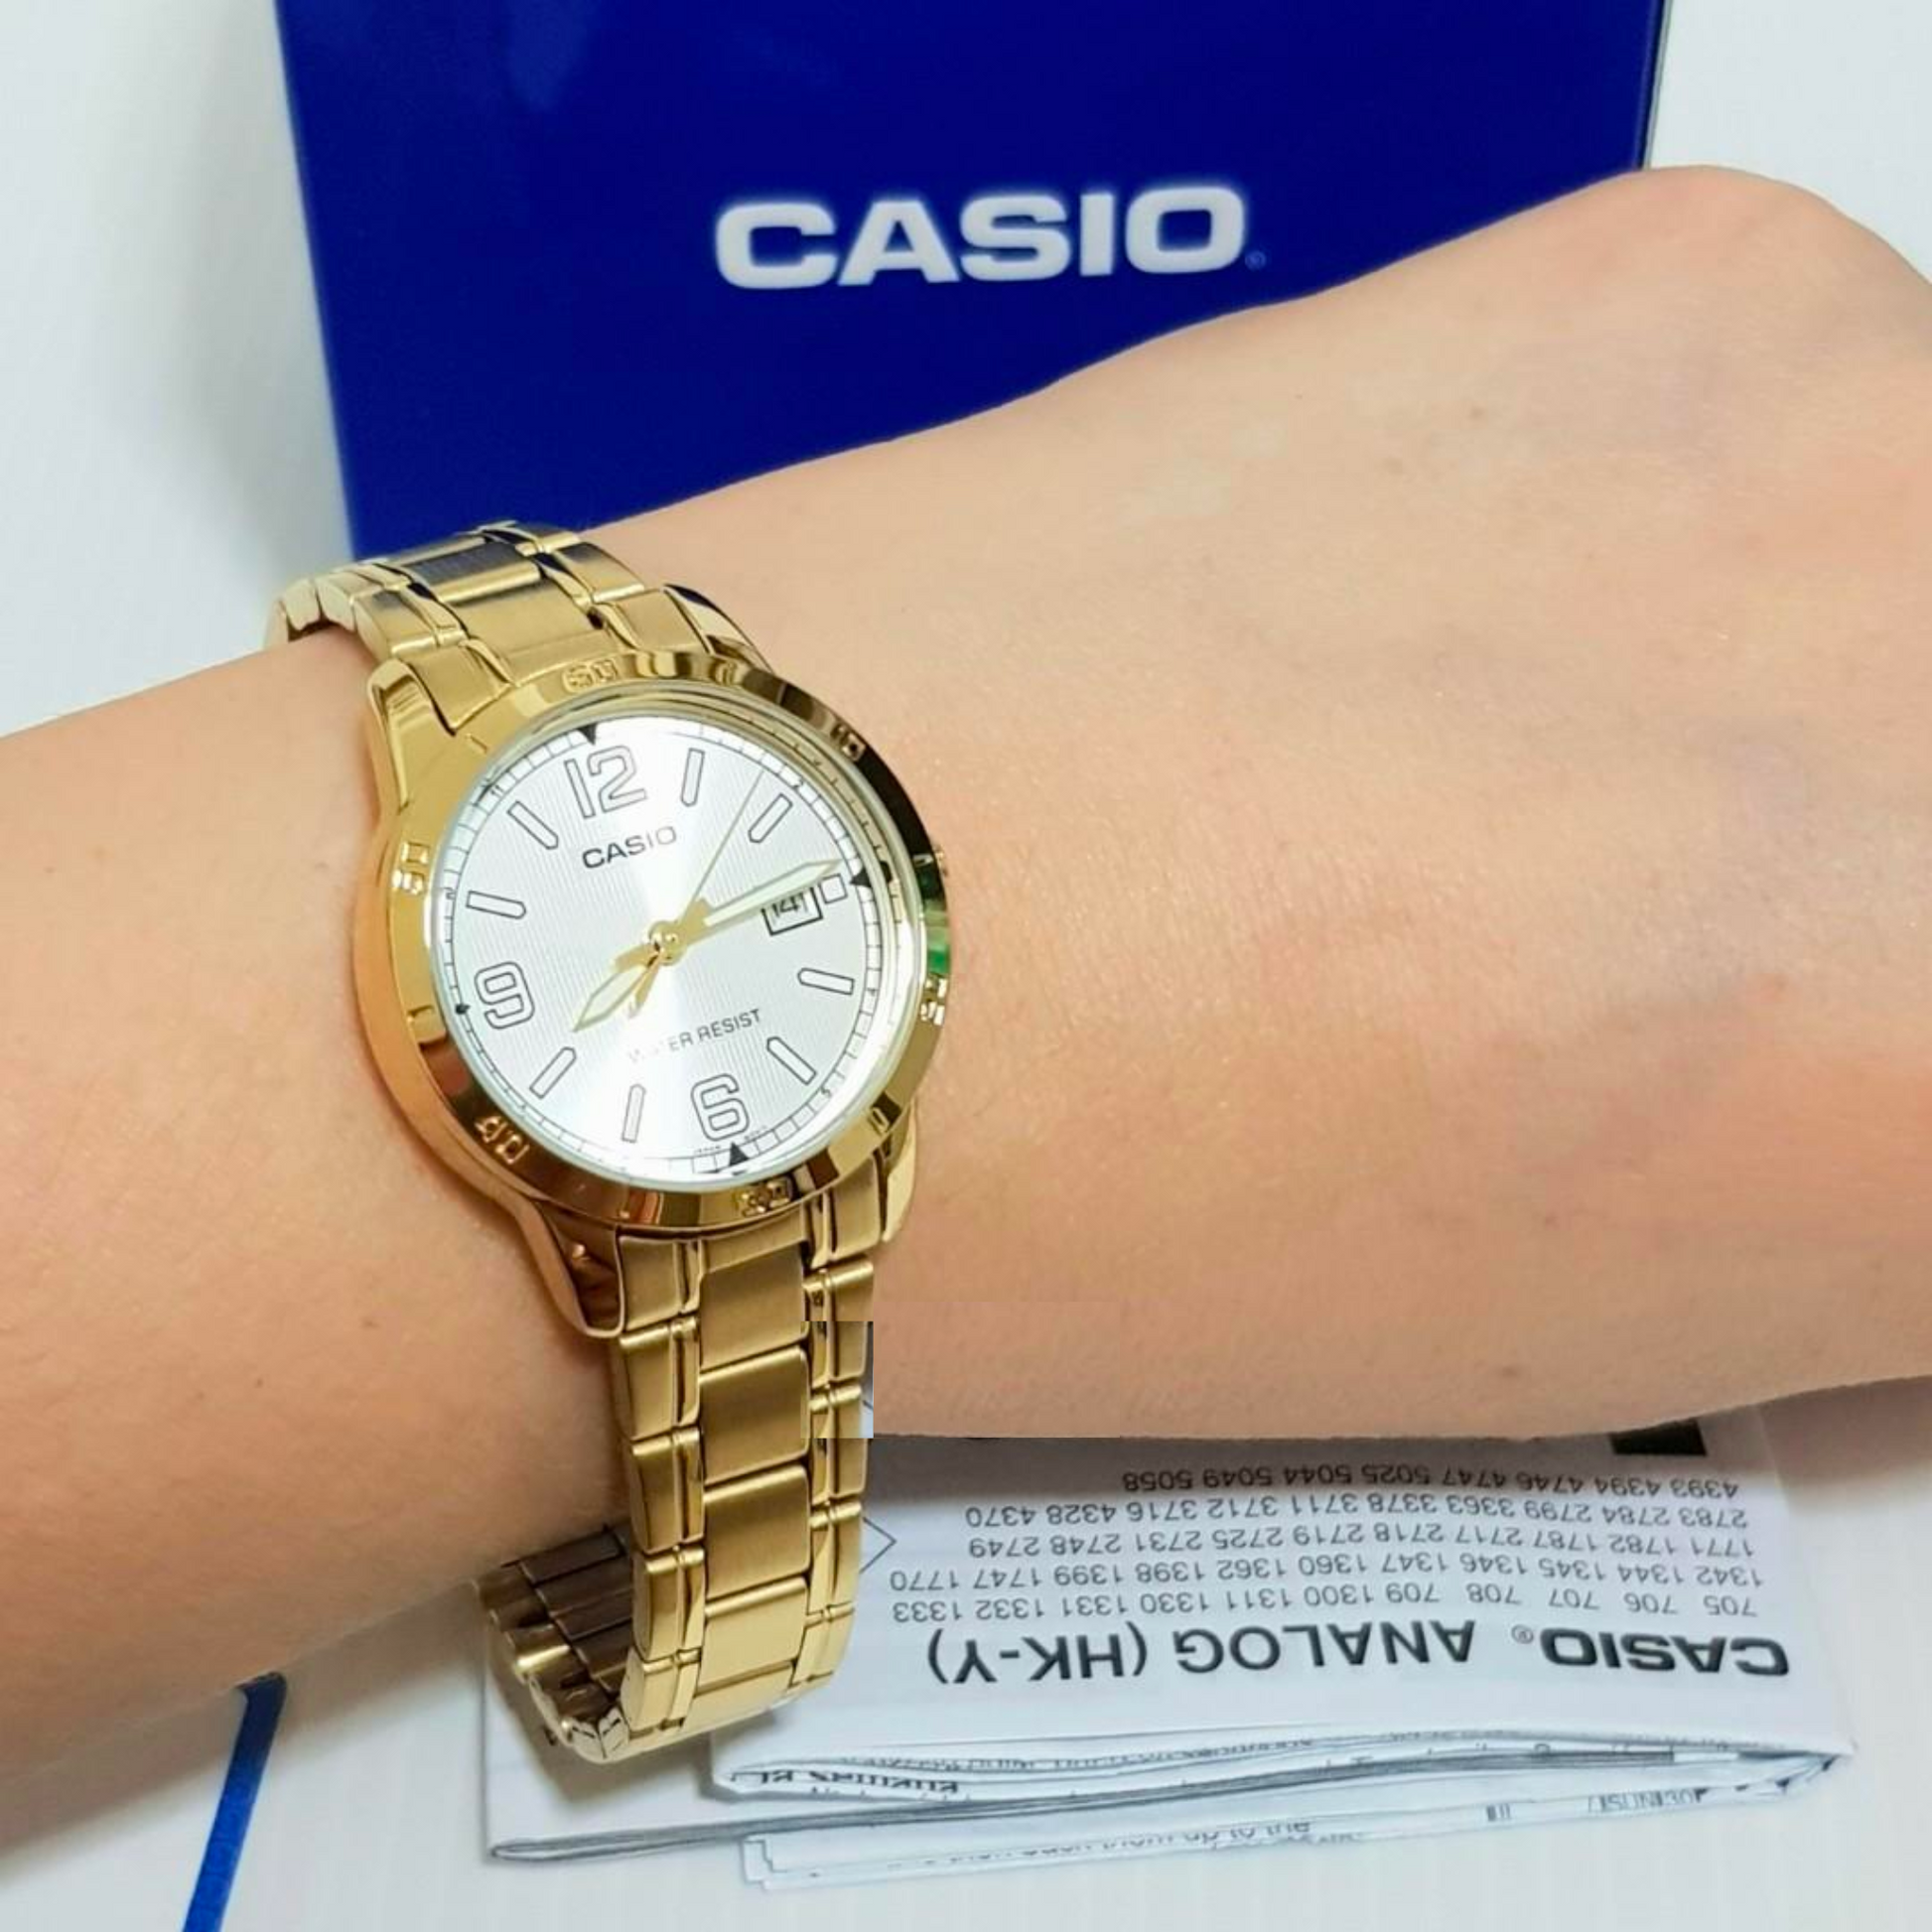 Reloj Casio dorado para mujer LTP-V004G-7BUDF